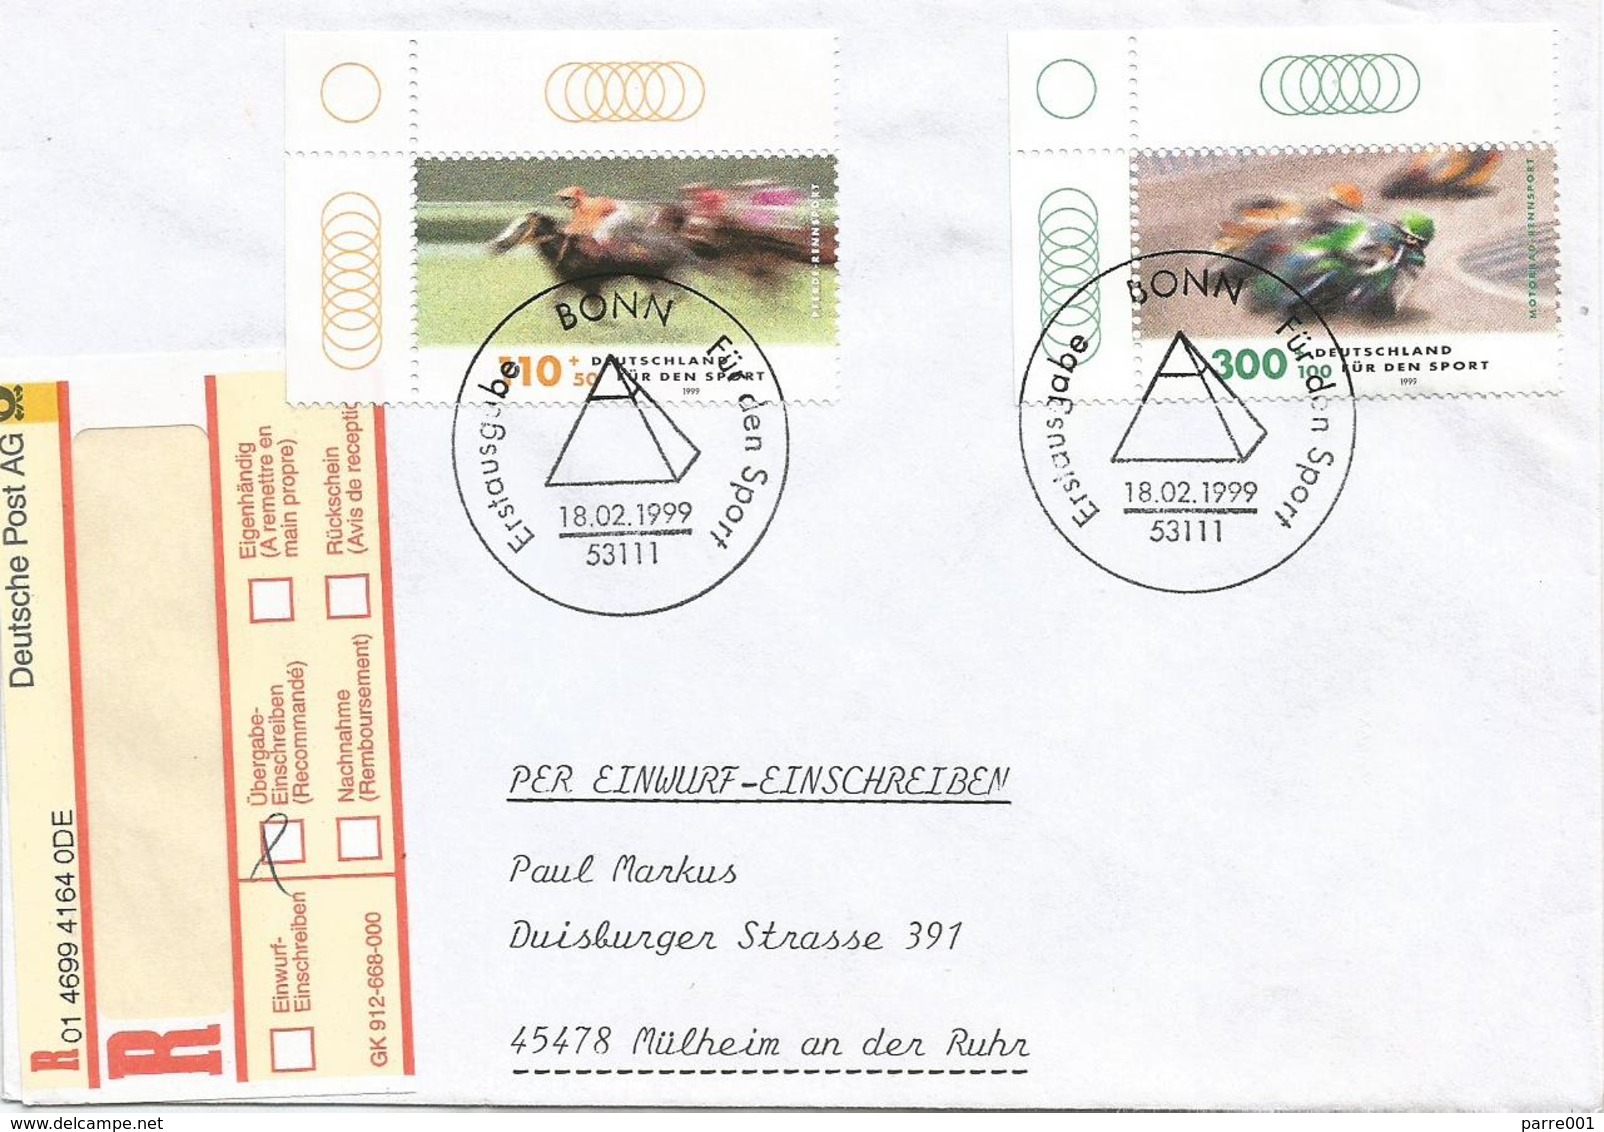 Germany 1999 Bonn Mottorrad Rennsport Moto Horse Jumping FDC Registered Cover - Motorbikes